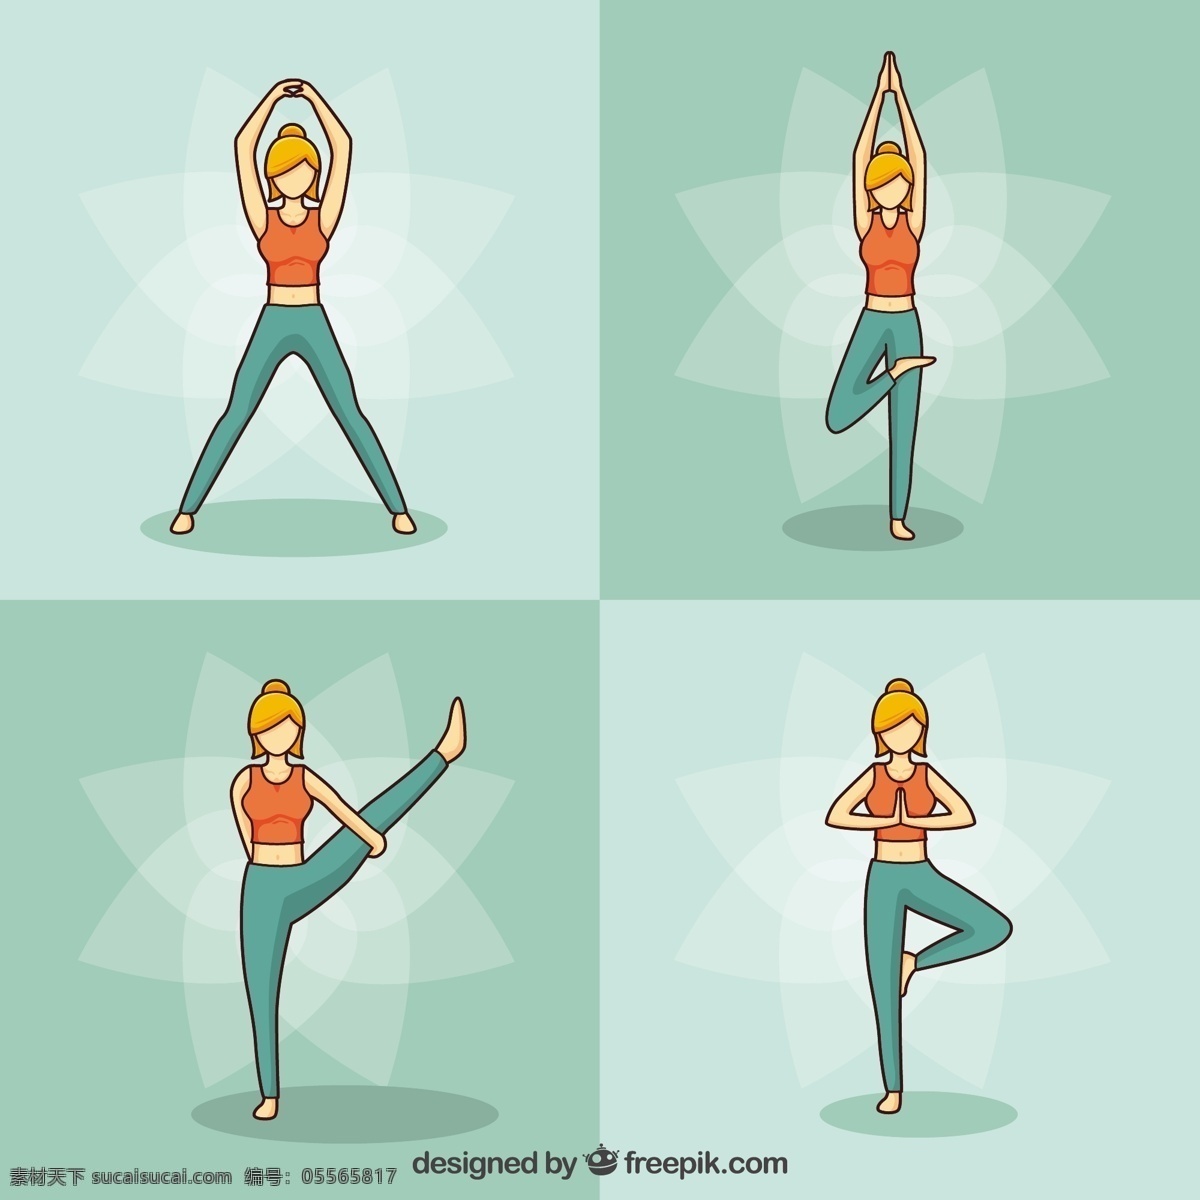 手 拉 女人 做 瑜伽 姿势 一方面 健康 手绘 可爱的人 颜色 图画 和平 运动 平衡 心态 人的身体 放松 生活方式 绘制草图 草图 绿色